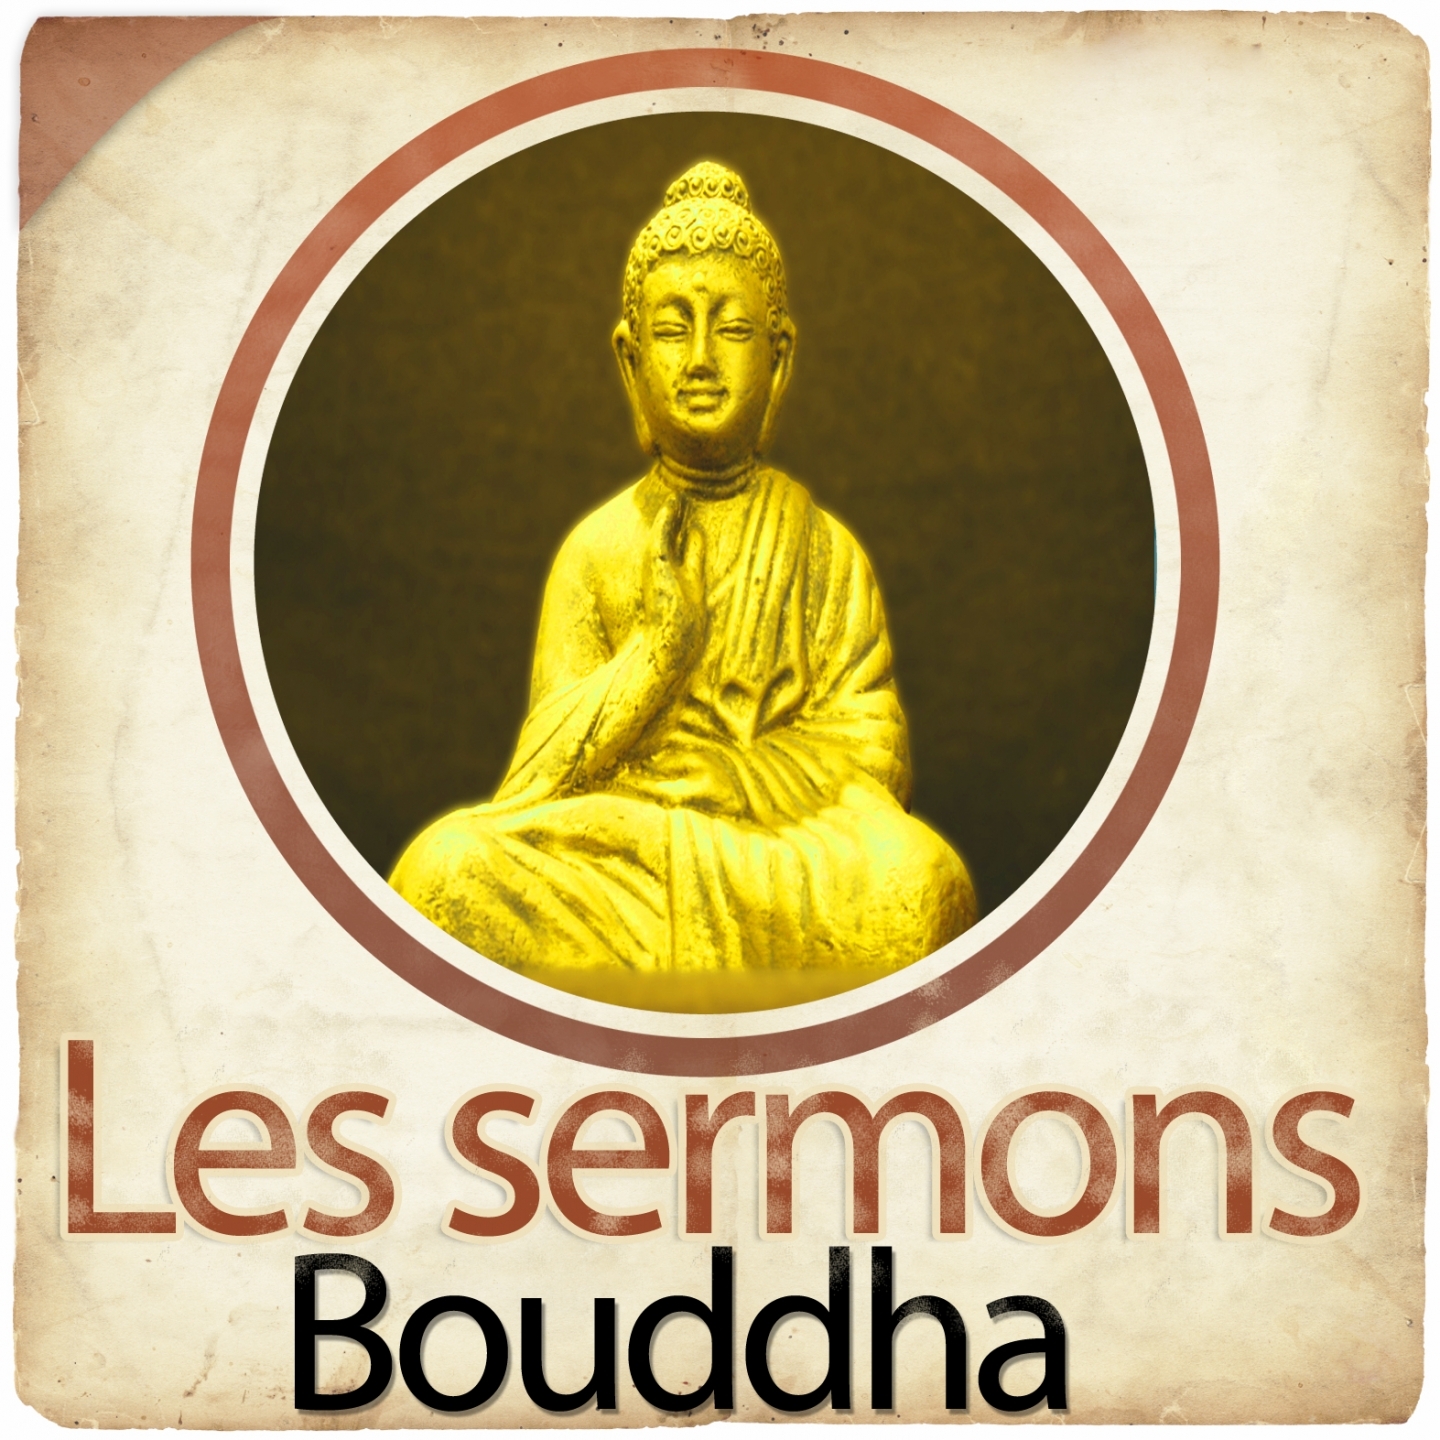 Les sermons de Bouddha, chapitre 12